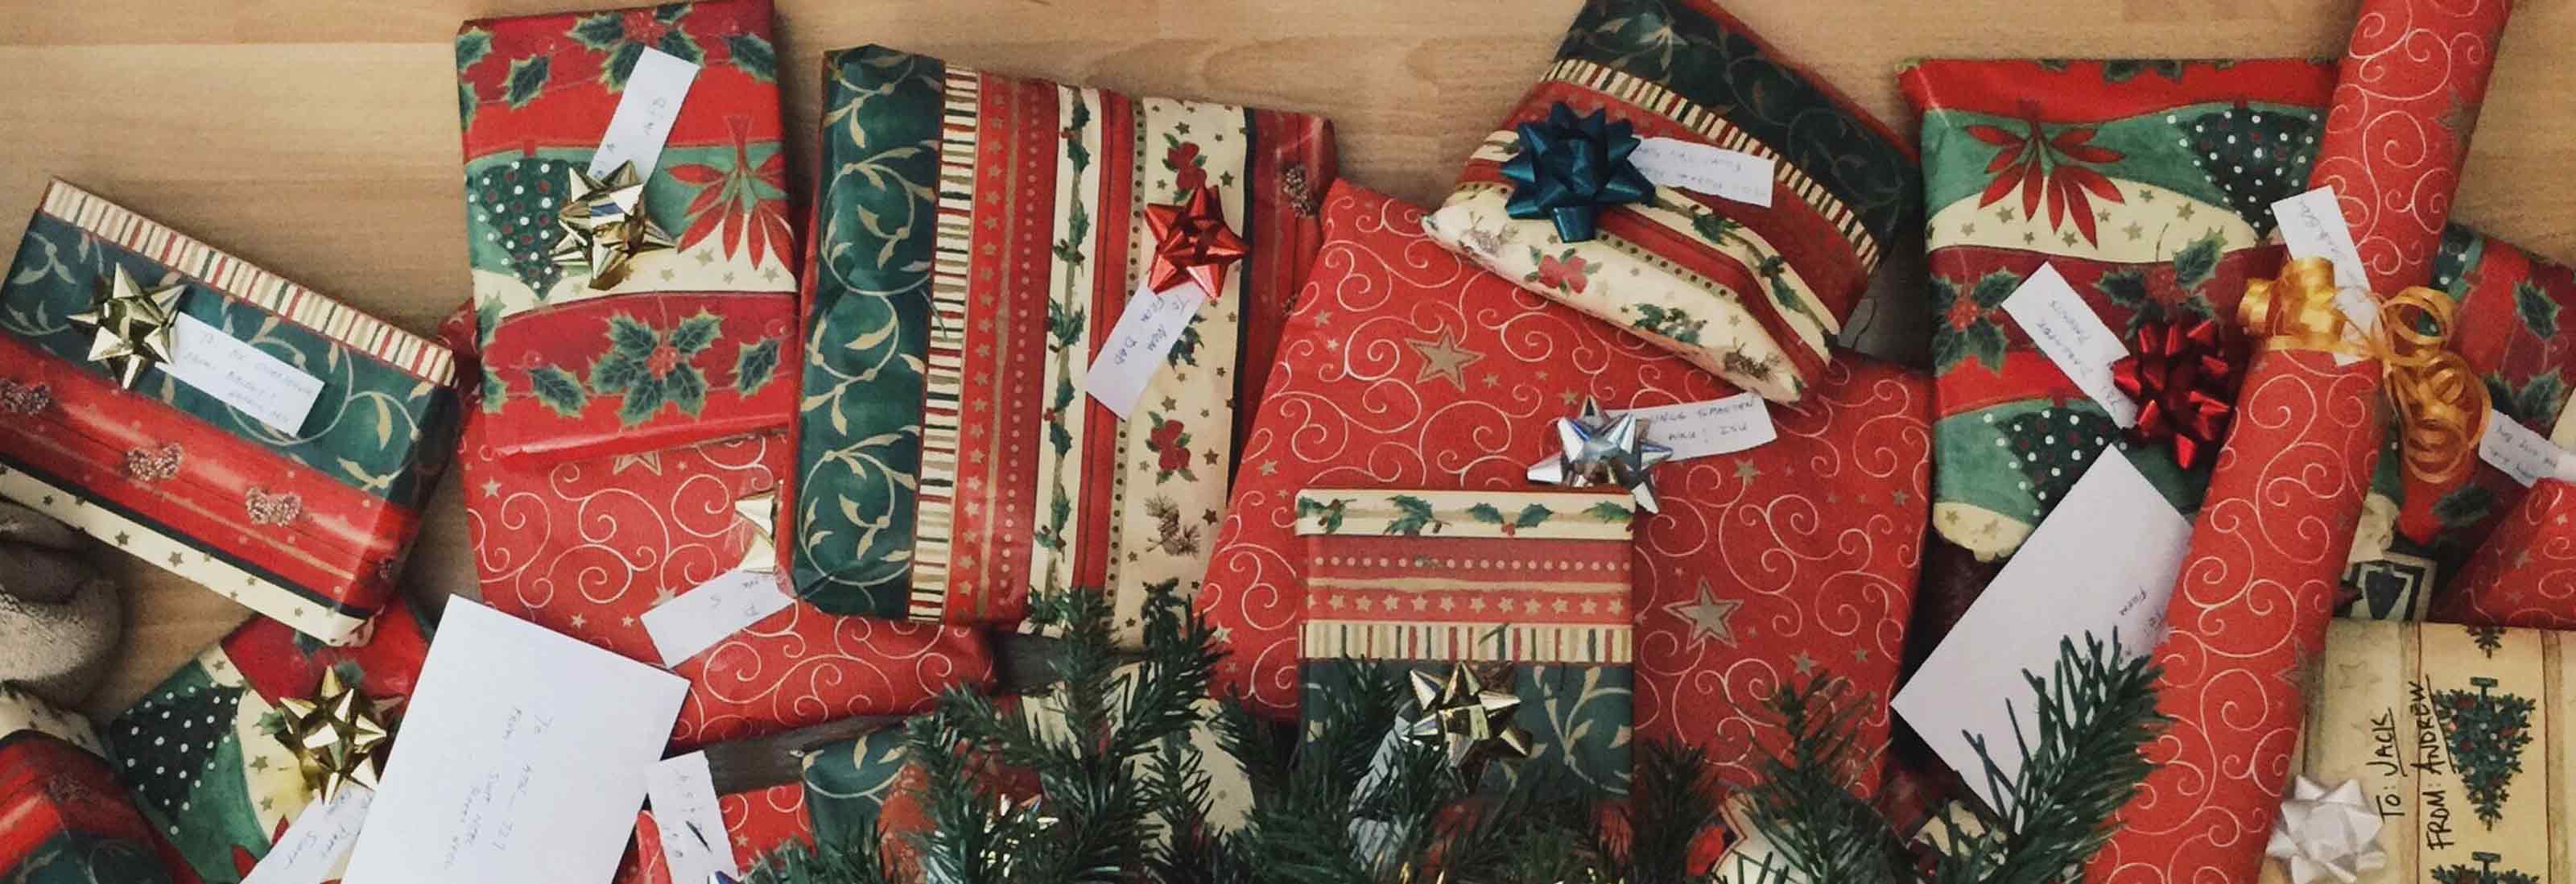 45 Персонализированных Идей Рождественских Подарков В Последнюю Минуту